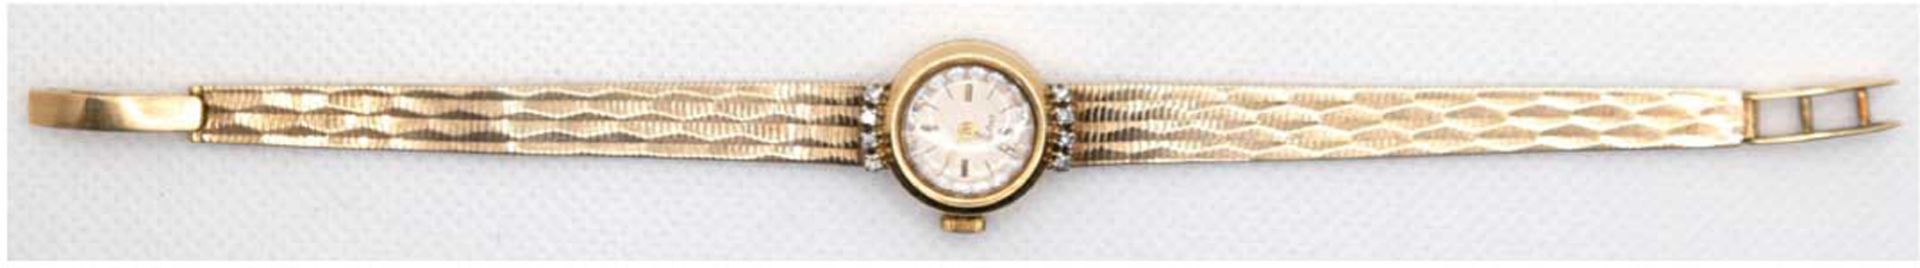 Damen-Armbanduhr "Dugena", 585er GG, 19,2 g, rundes Gehäuse besetzt mit 8 Brillanten, mechanisches 